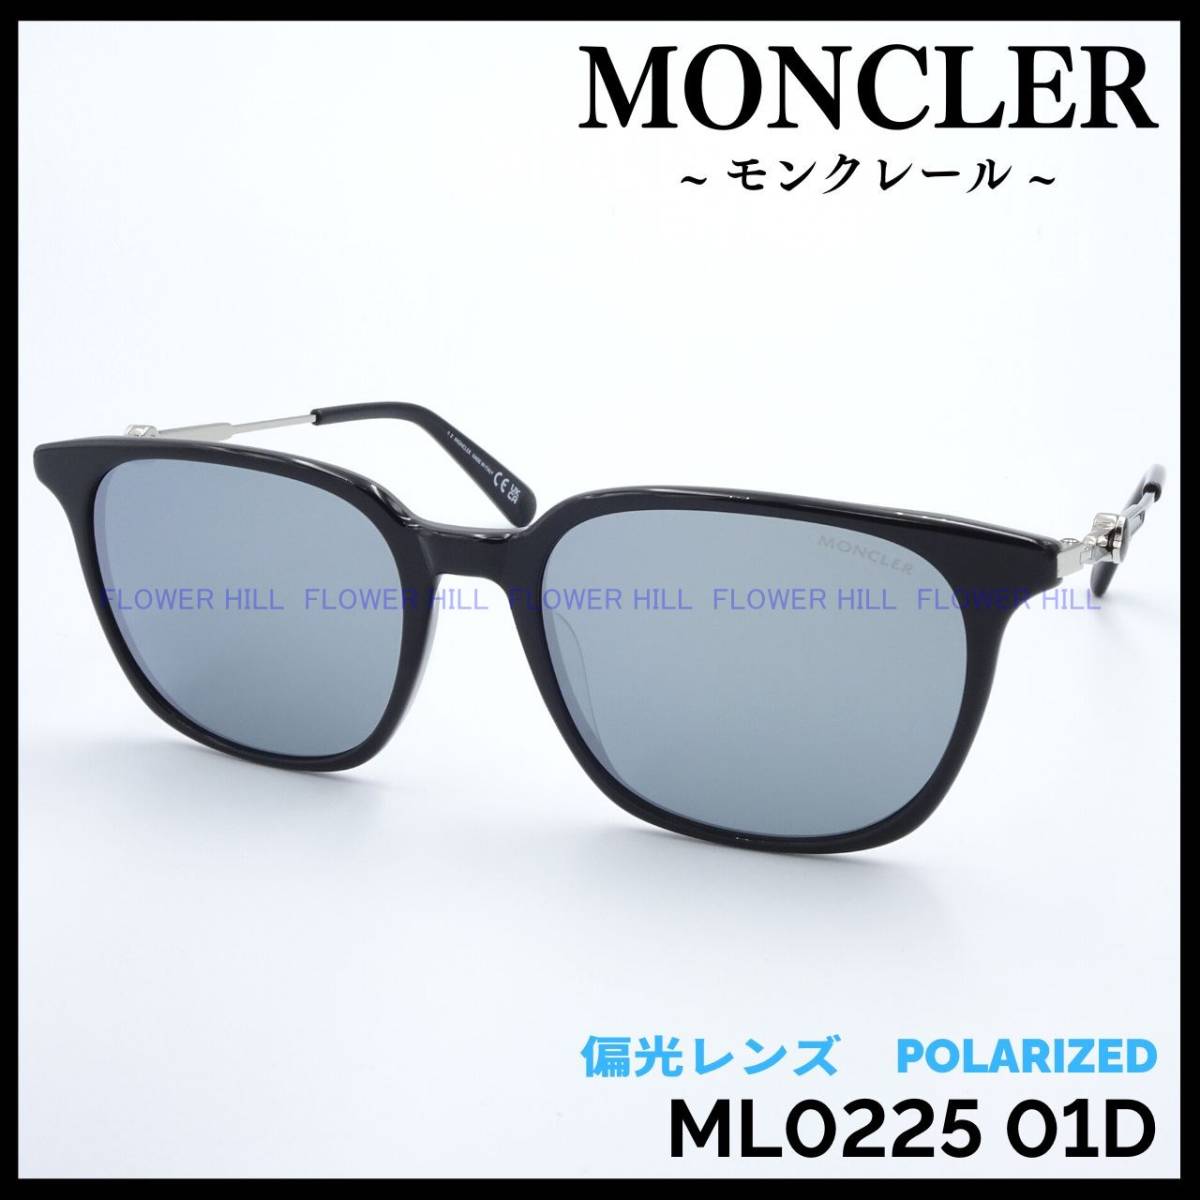 【新品・送料無料】モンクレール MONCLER 偏光サングラス ML0225 01D ブラック/グレー イタリア製 メンズ レディース